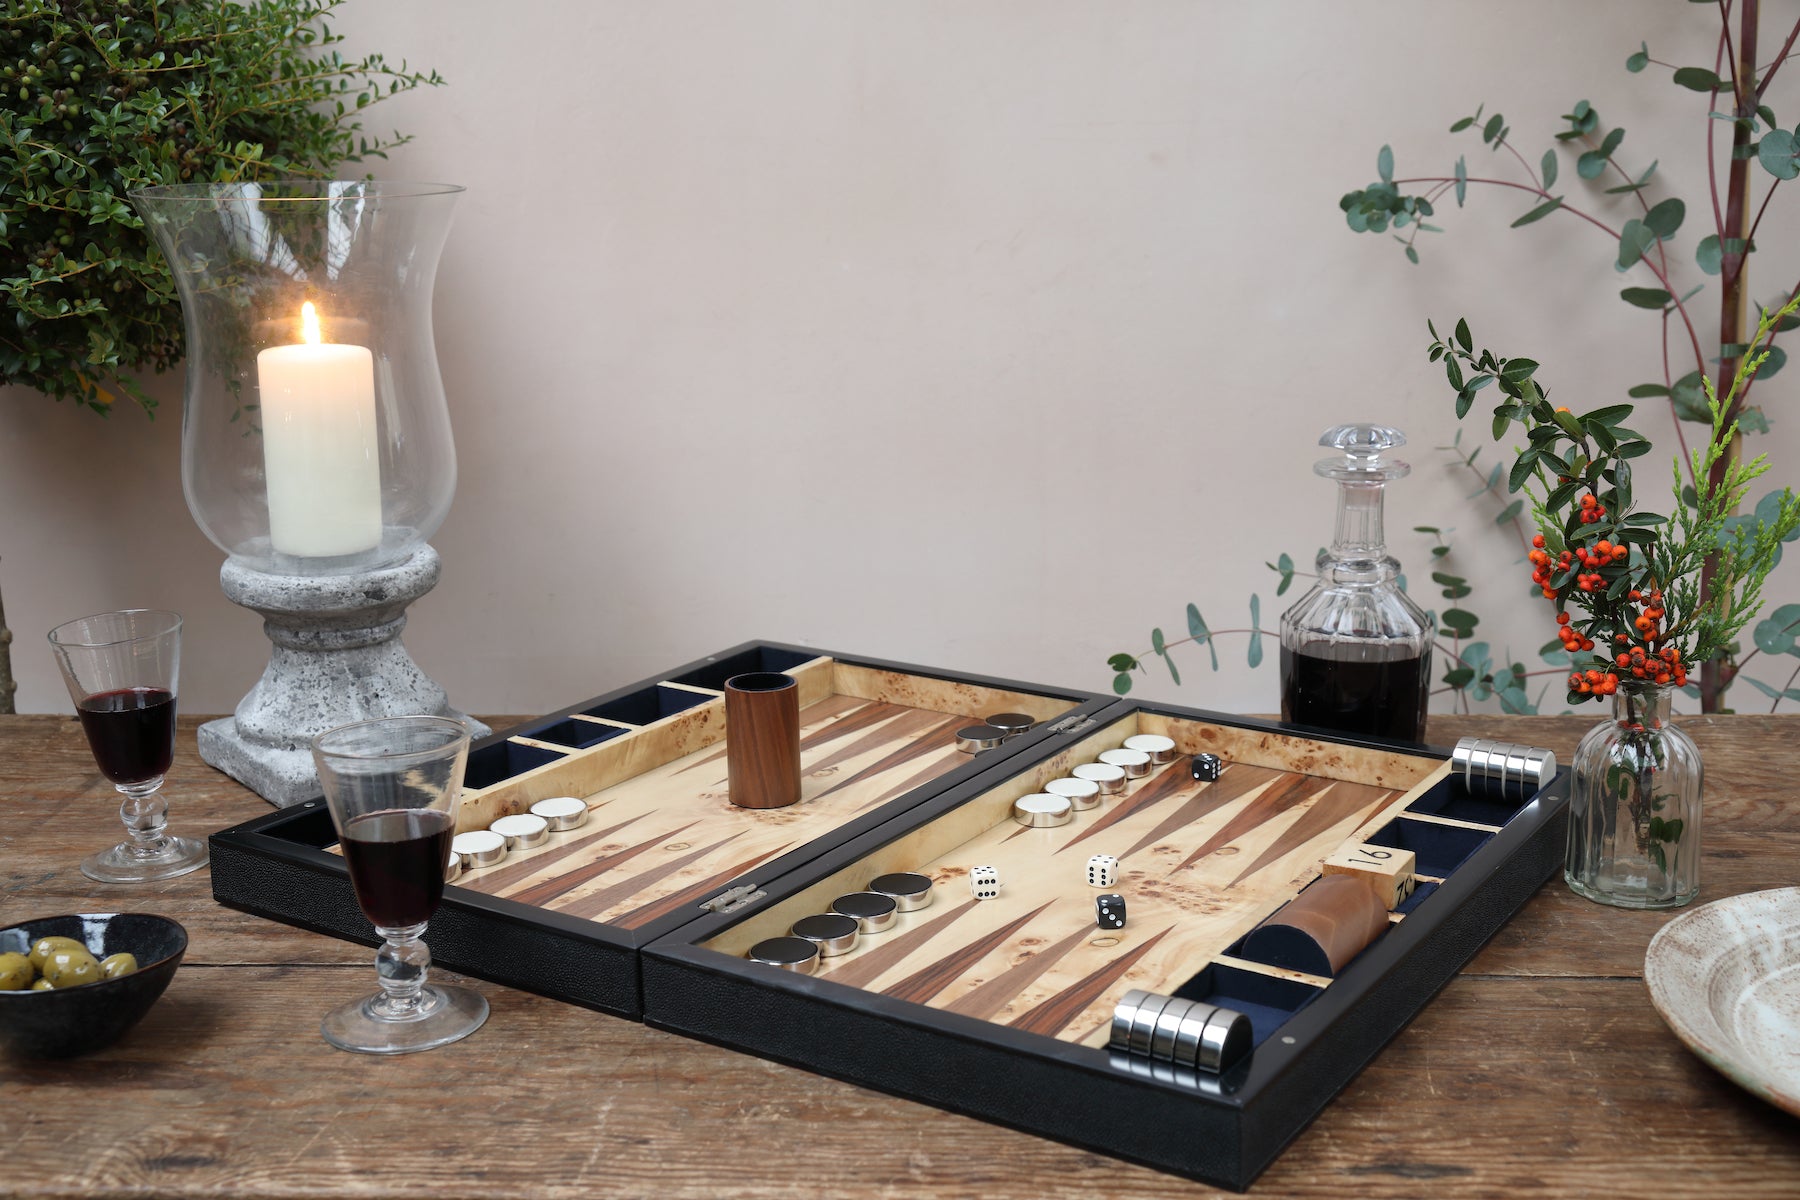 Backgammon board Shagreen backgammon board